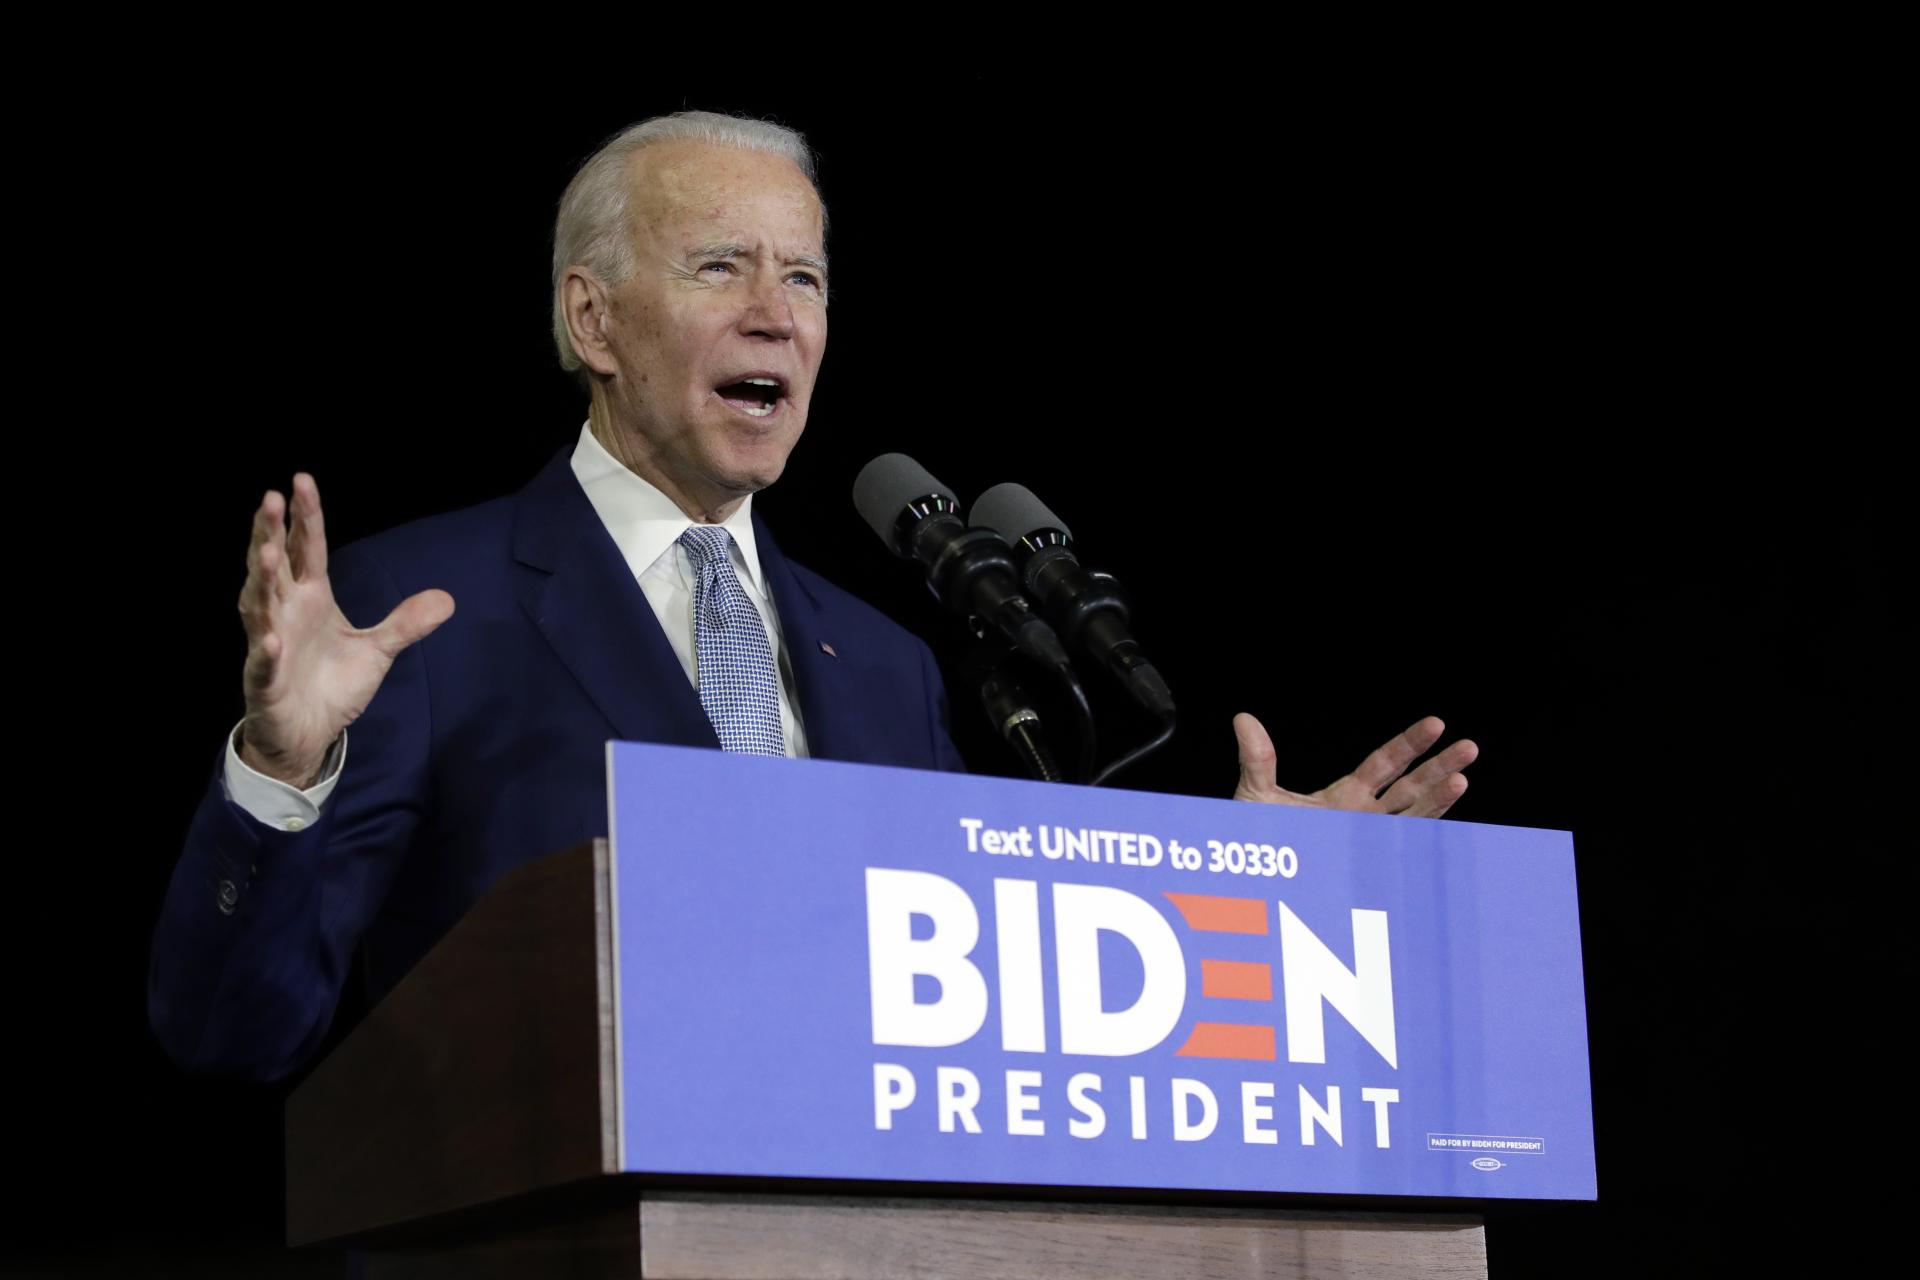 3. marec 2020 Los Angeles, USA: Bývalý viceprezident Joe Biden sa prihovára svojim stúpencom v Kalifornii. Počas „superutorka“ vyhral v 10 zo 14 štátov USA.